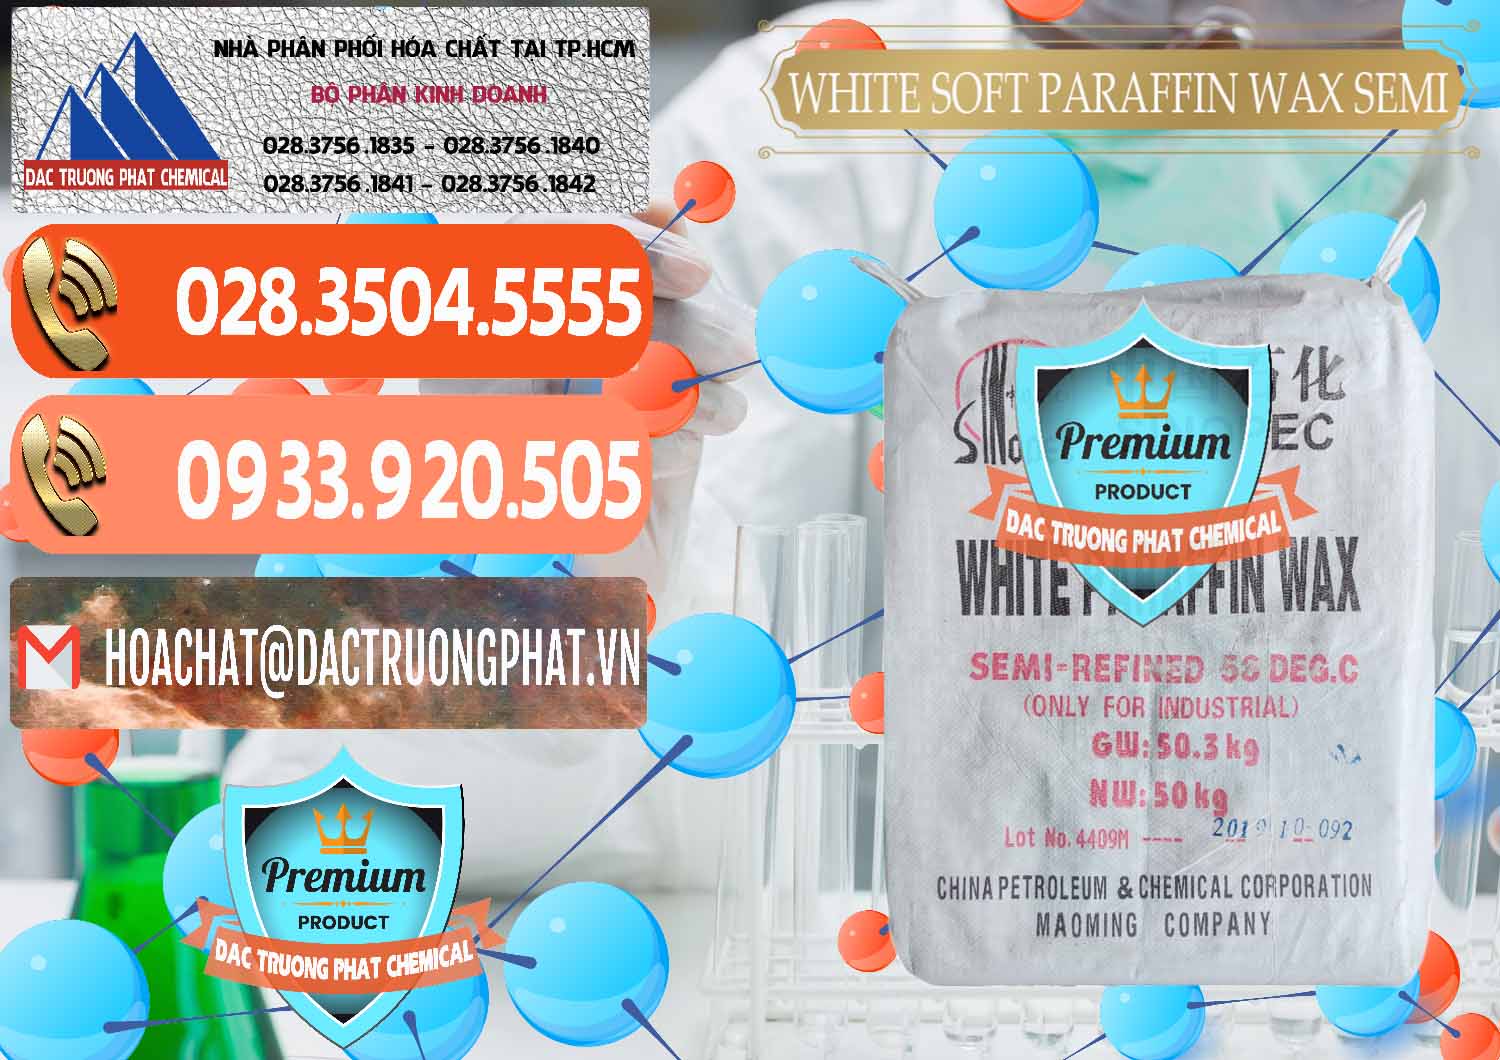 Đơn vị chuyên phân phối ( bán ) Sáp Paraffin Wax Sinopec Trung Quốc China - 0328 - Chuyên cung cấp & phân phối hóa chất tại TP.HCM - hoachatmientay.com